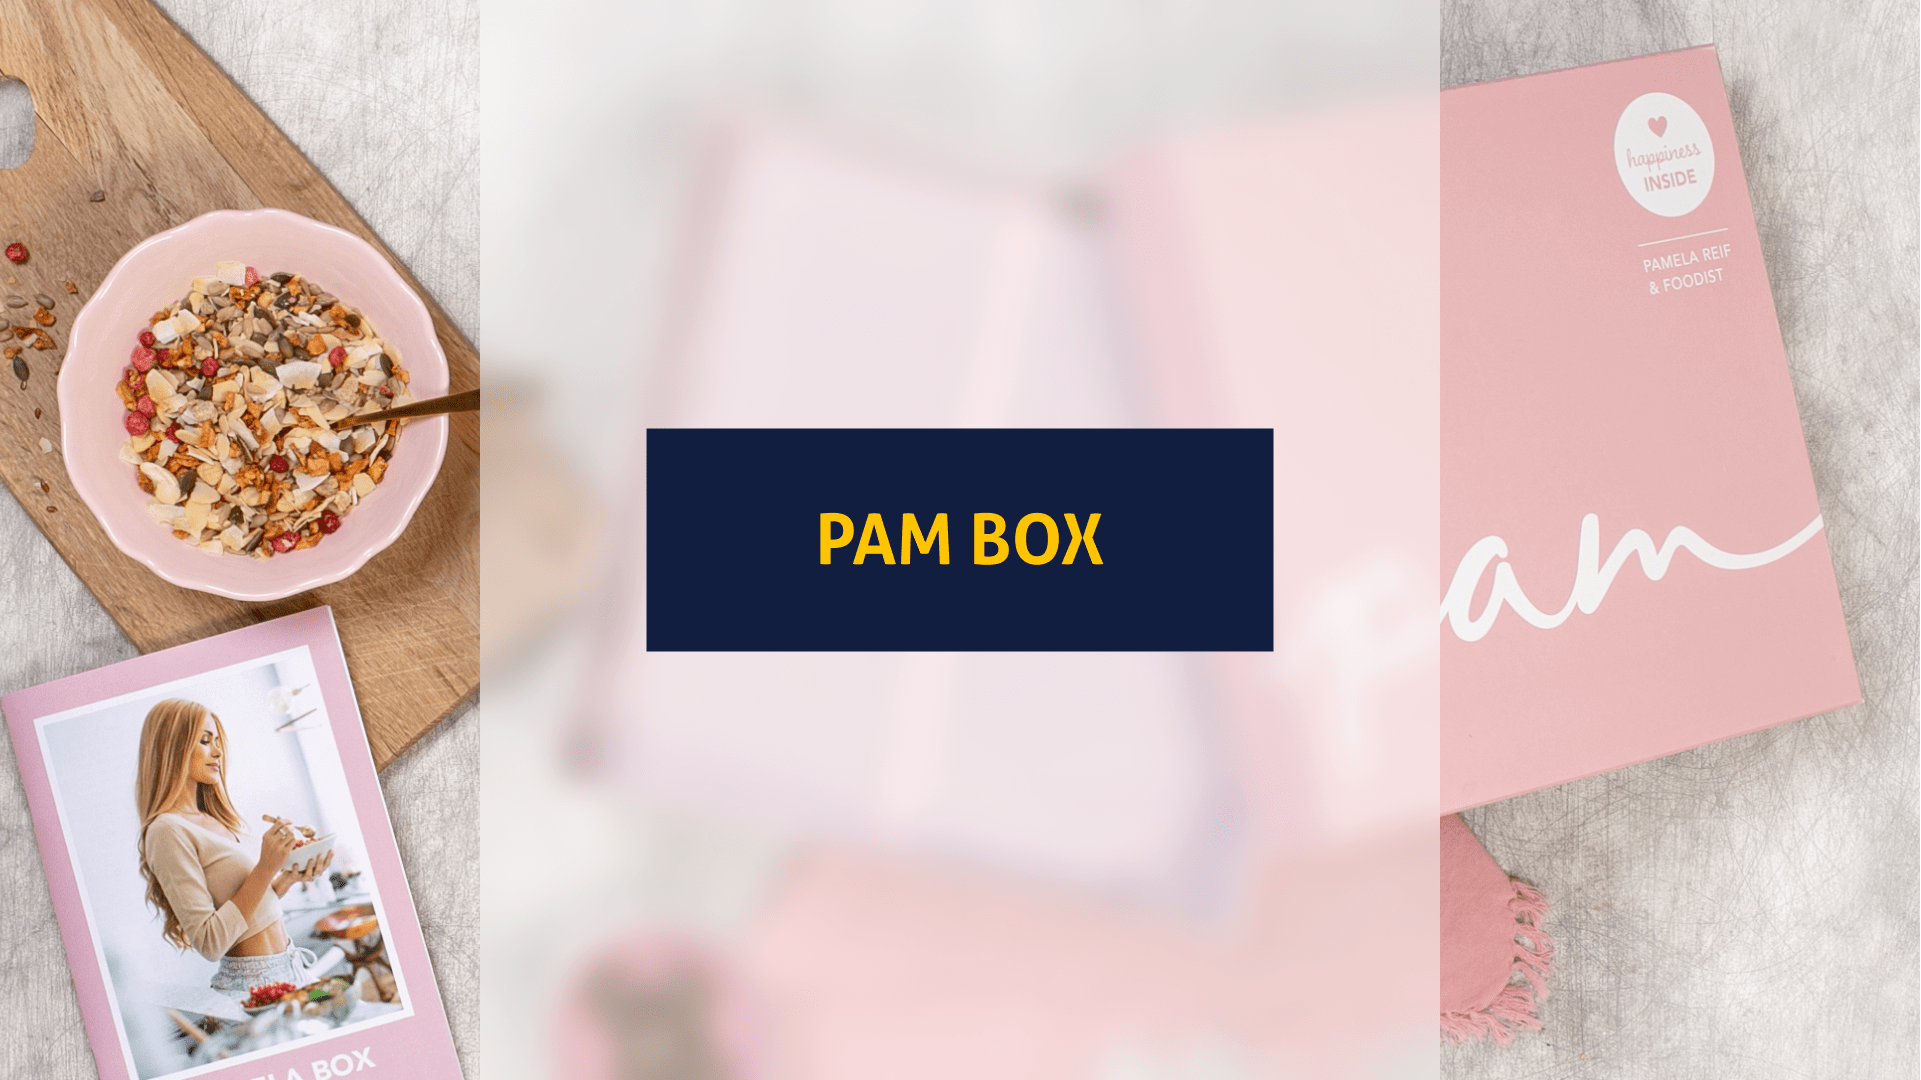 Happiness inside: Wir testen die Pam Box von Fitness-Influencerin Pamela Reif (Foto: Foodist)